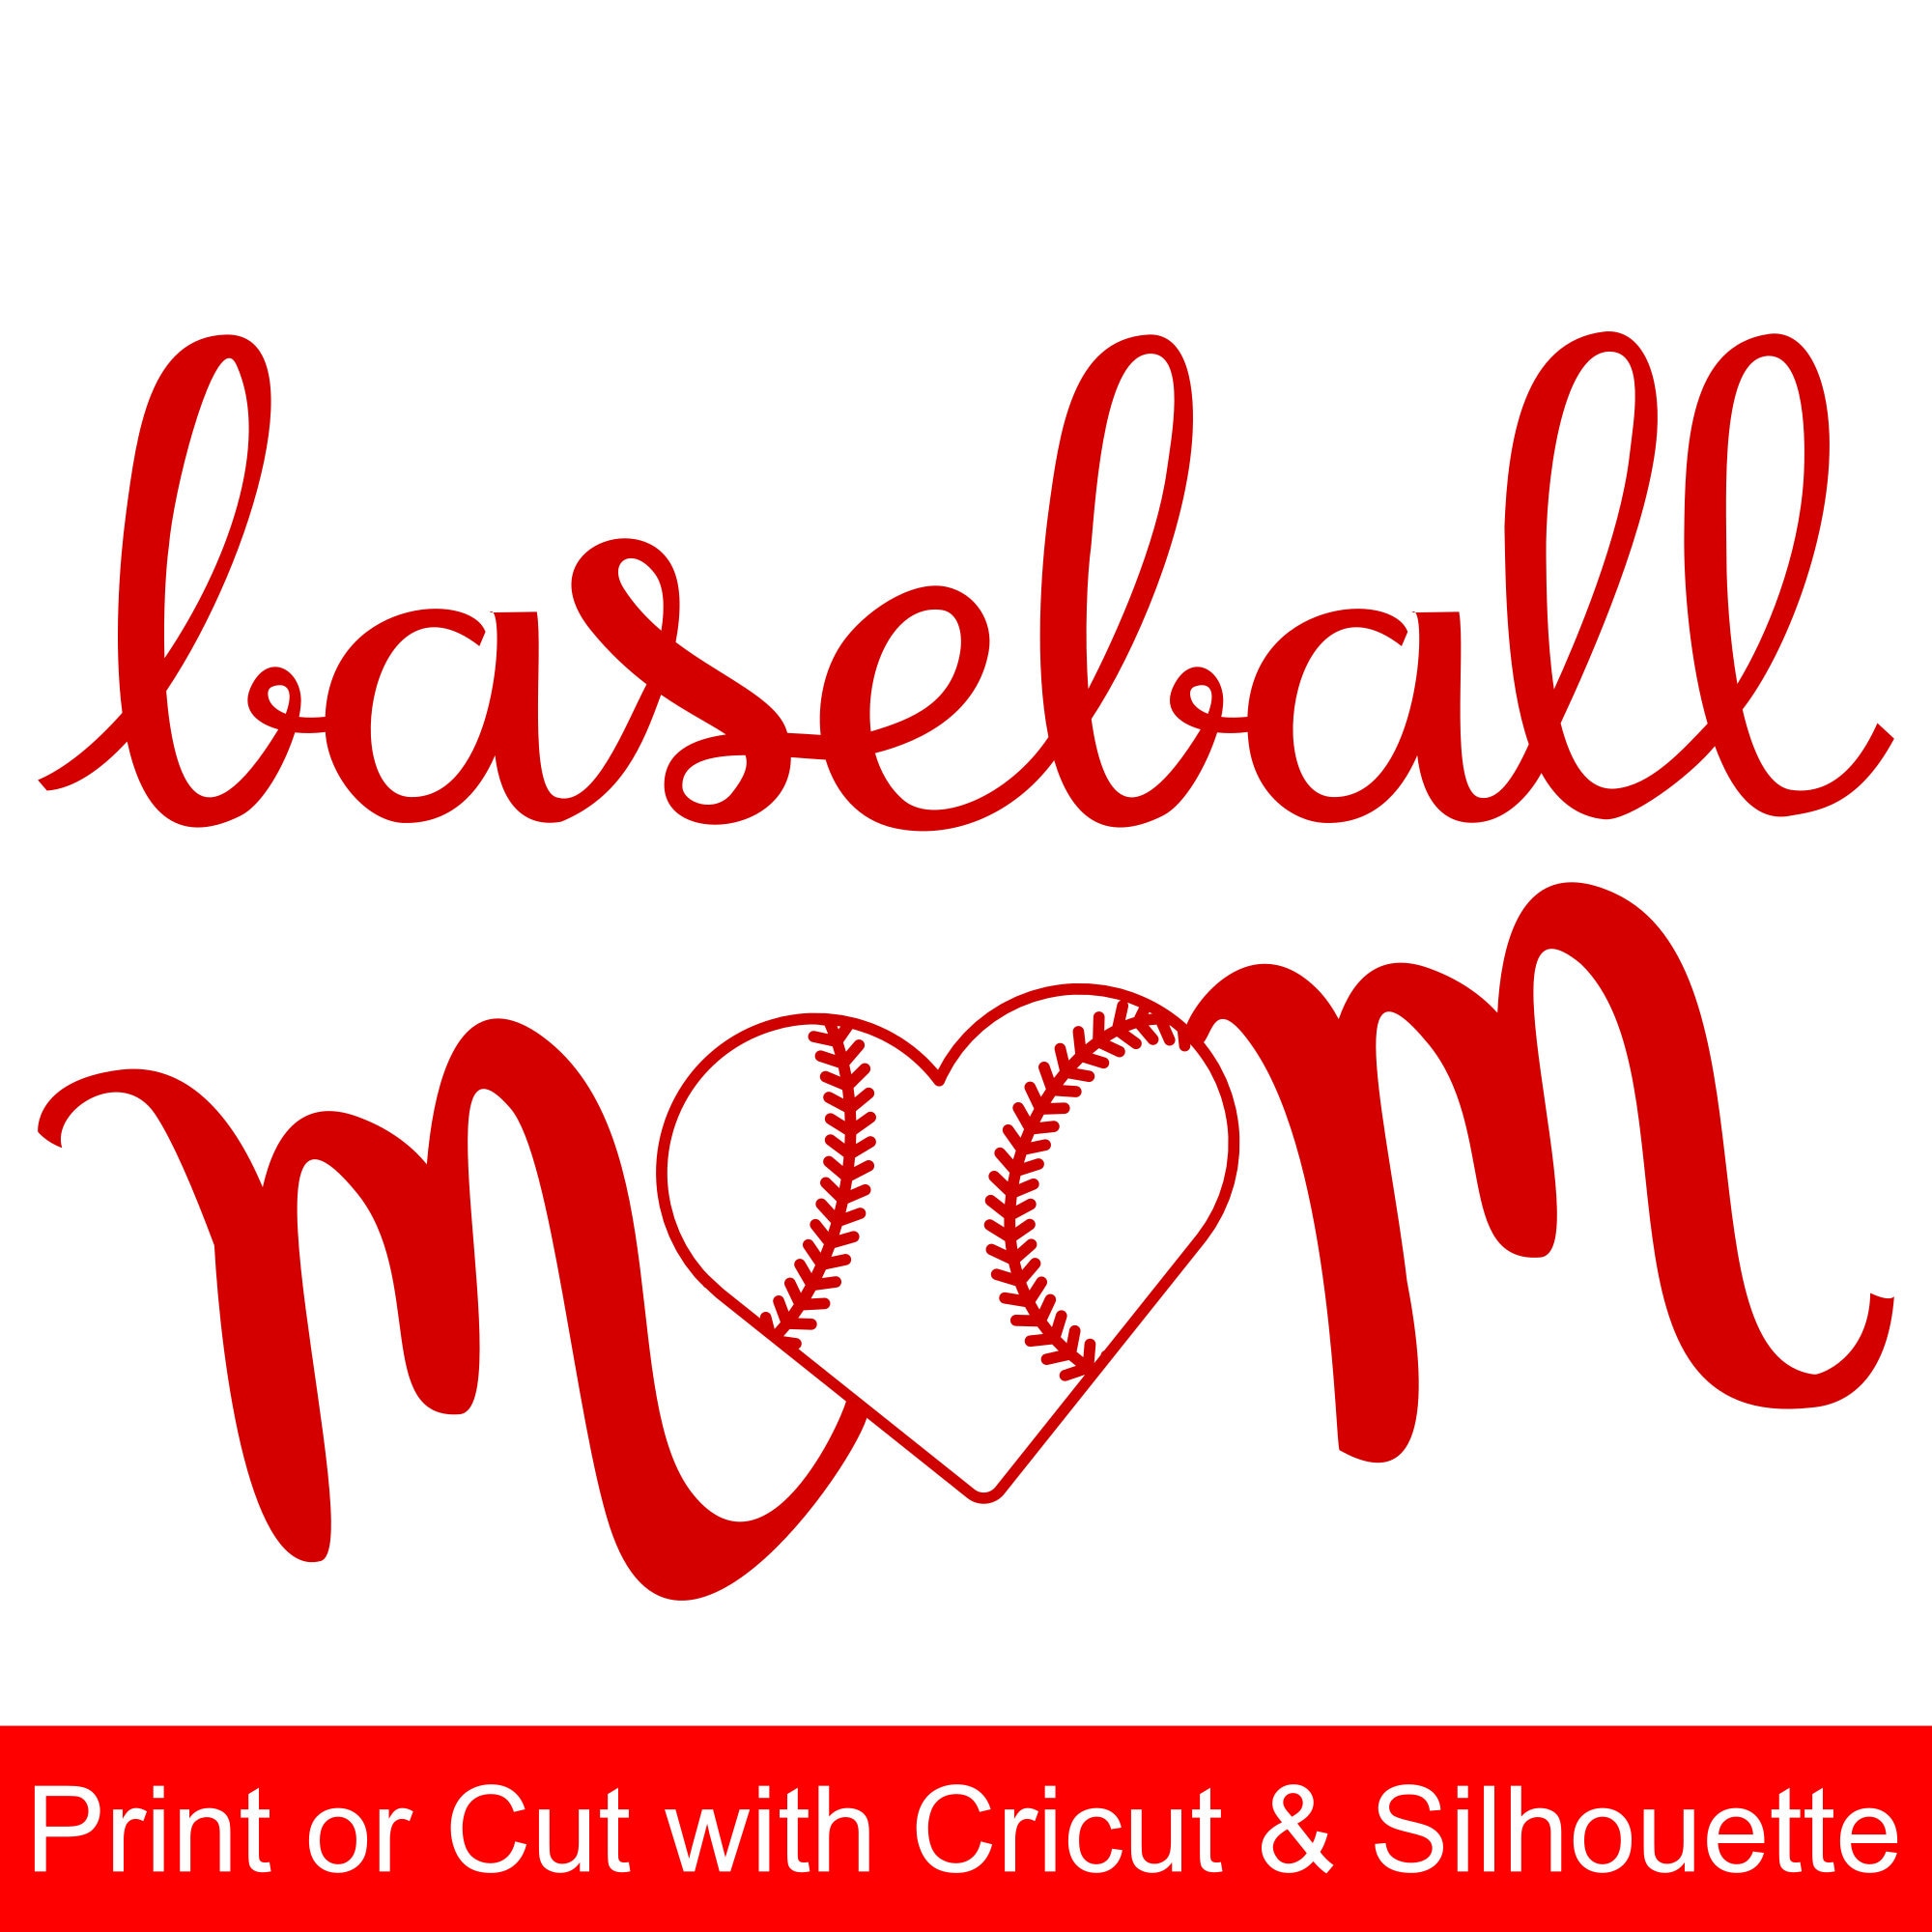 Download Baseball Mom SVG File with heart shaped baseball to make Baseball shirts and gifts